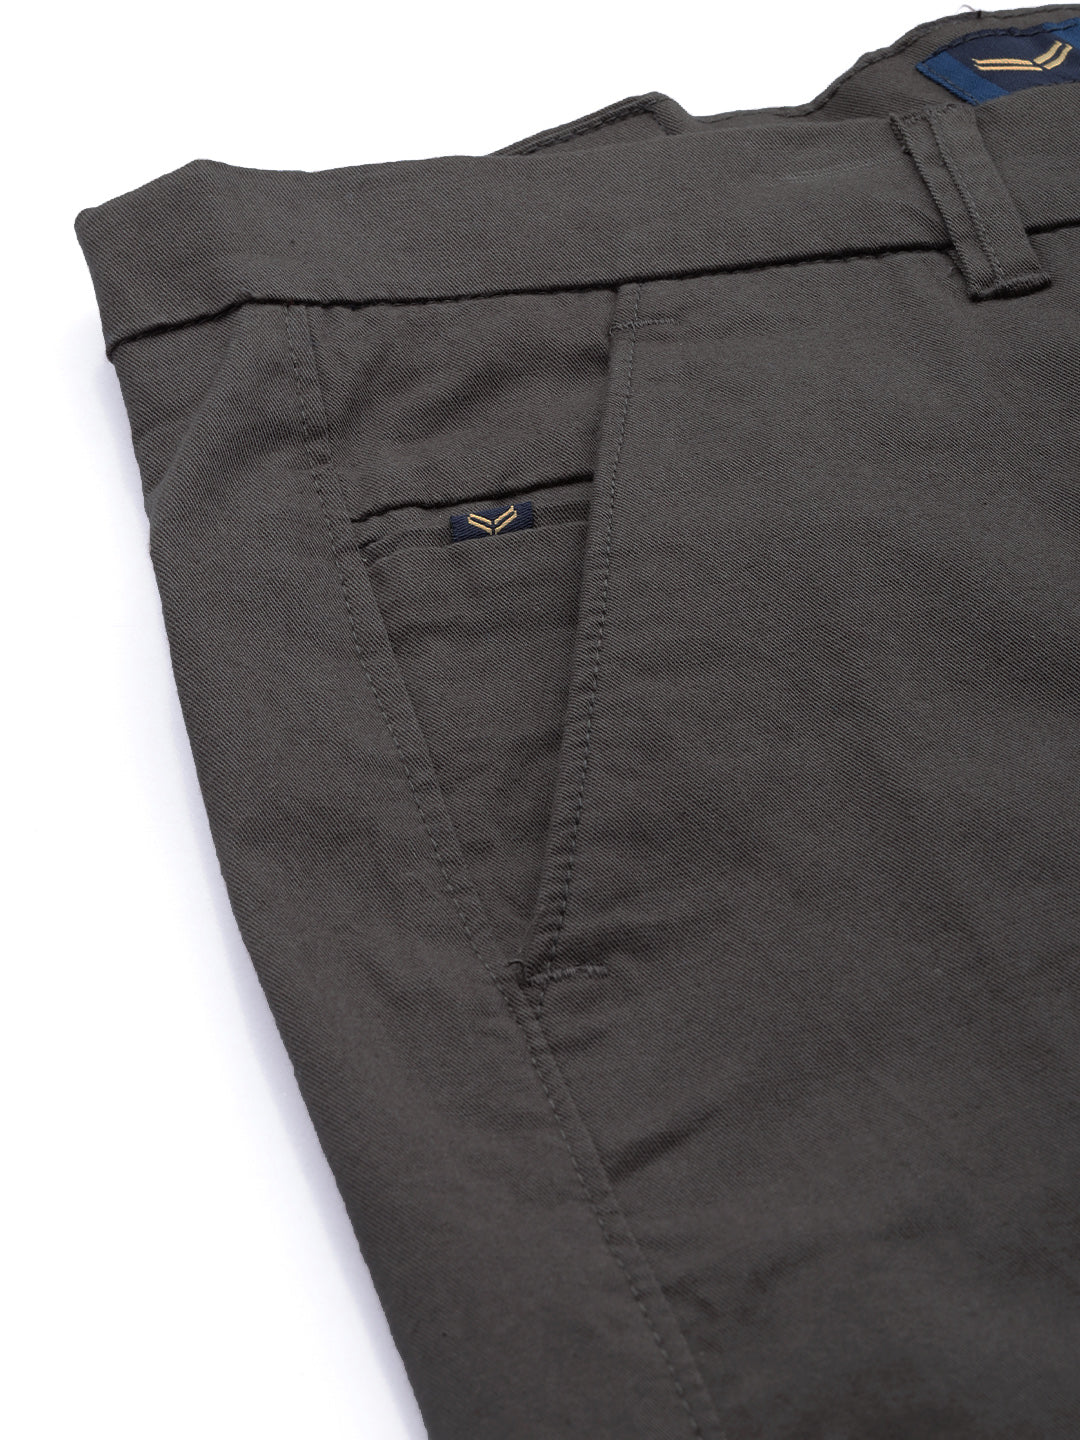 Timeless Men's Trousers for Effortless Elegance - Dark Grey